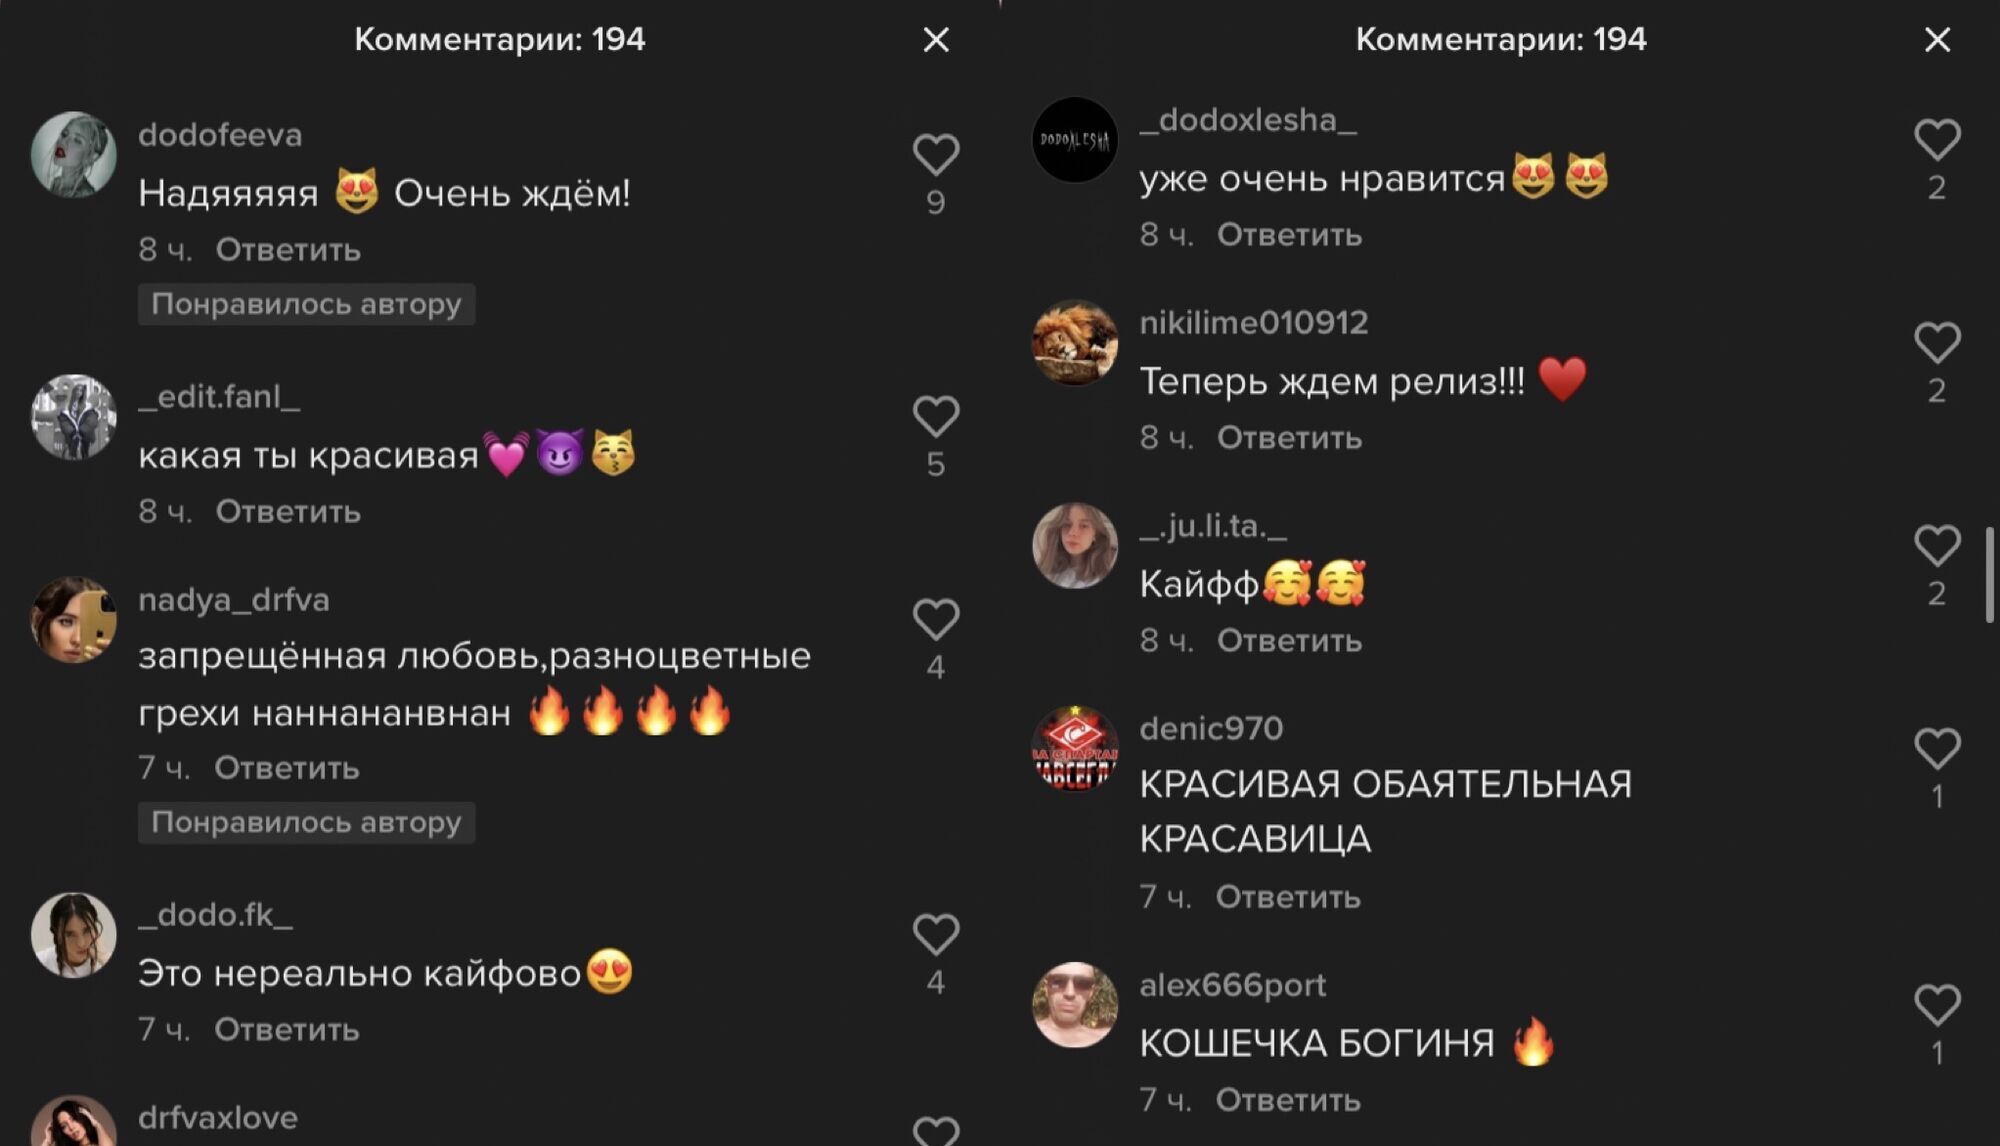 Коментарі під відео Наді Дорофєєвої